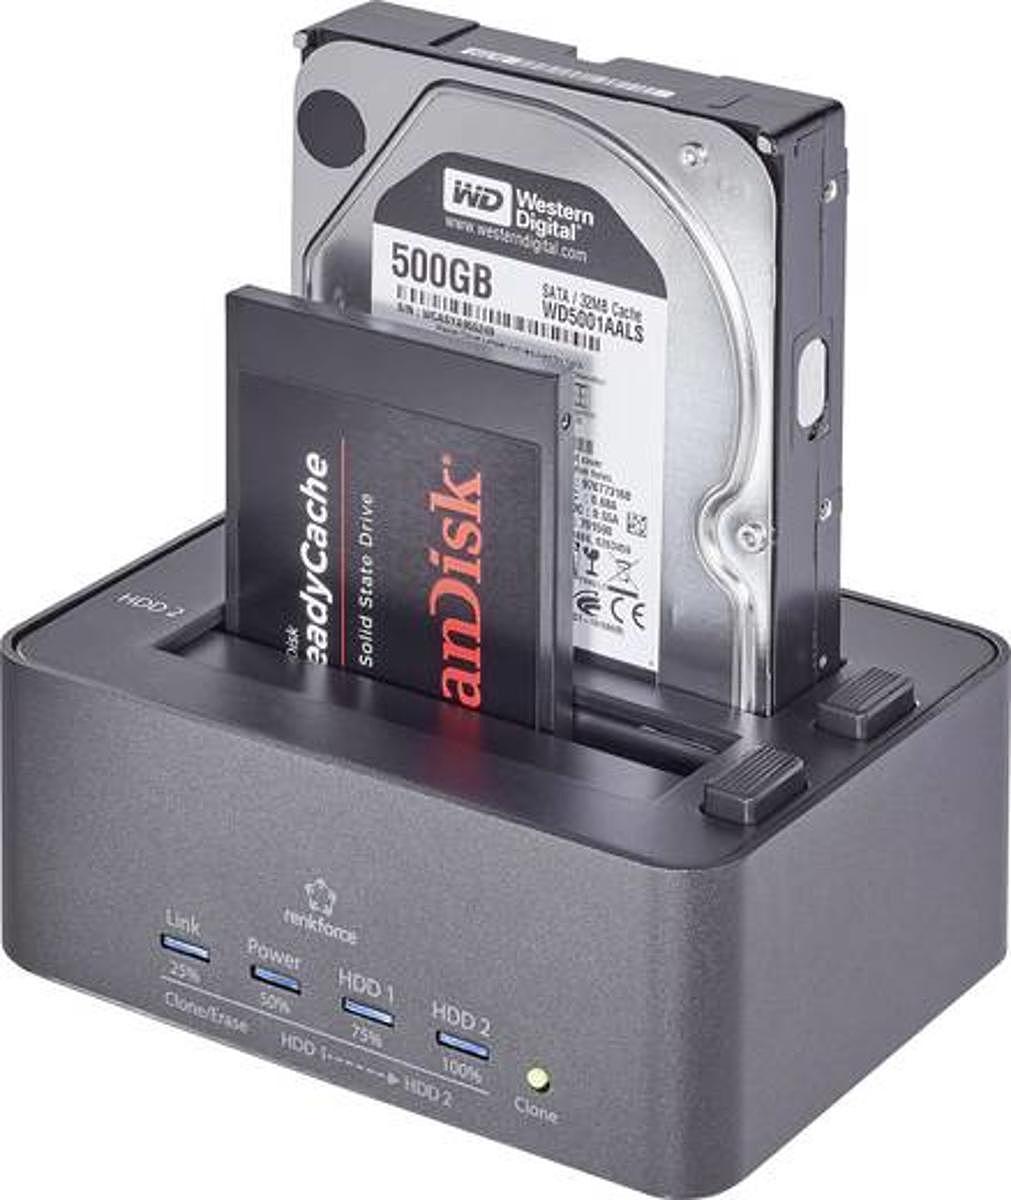 Renkforce USB 3.0 SATA Festplatten-Dockingstation Erase-Funktion UNVOLLSTÄNDIG